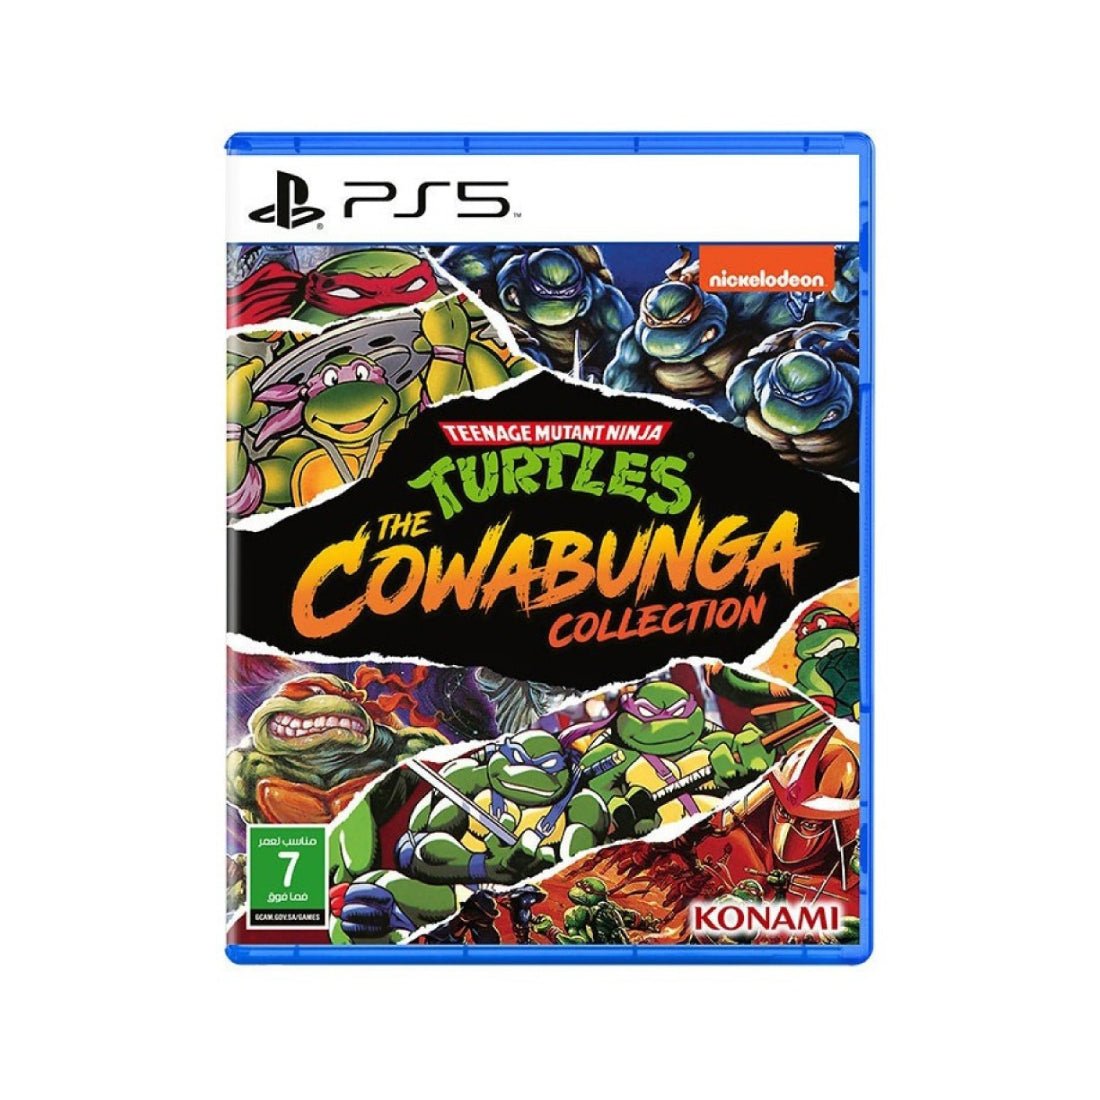 Teenage Mutant Ninja Turtles Cowabunga Collection - PlayStation 5 - لعبة - Store 974 | ستور ٩٧٤